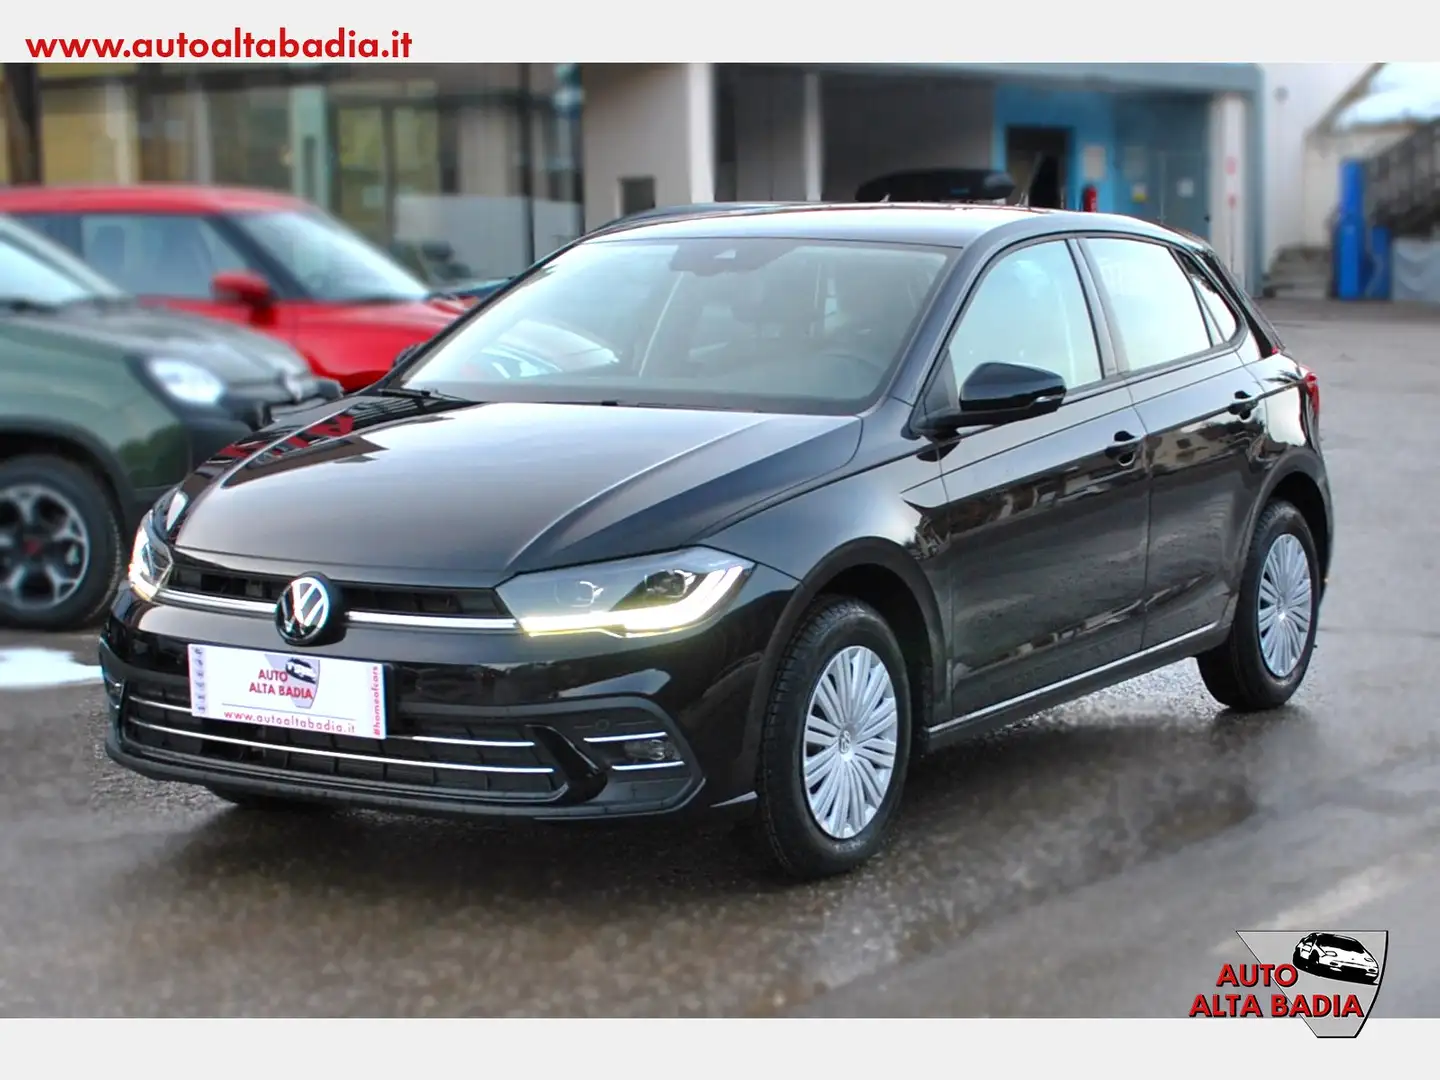 aziendale Volkswagen Polo Berlina a Badia - Bolzano - Bz per € 22.900,-